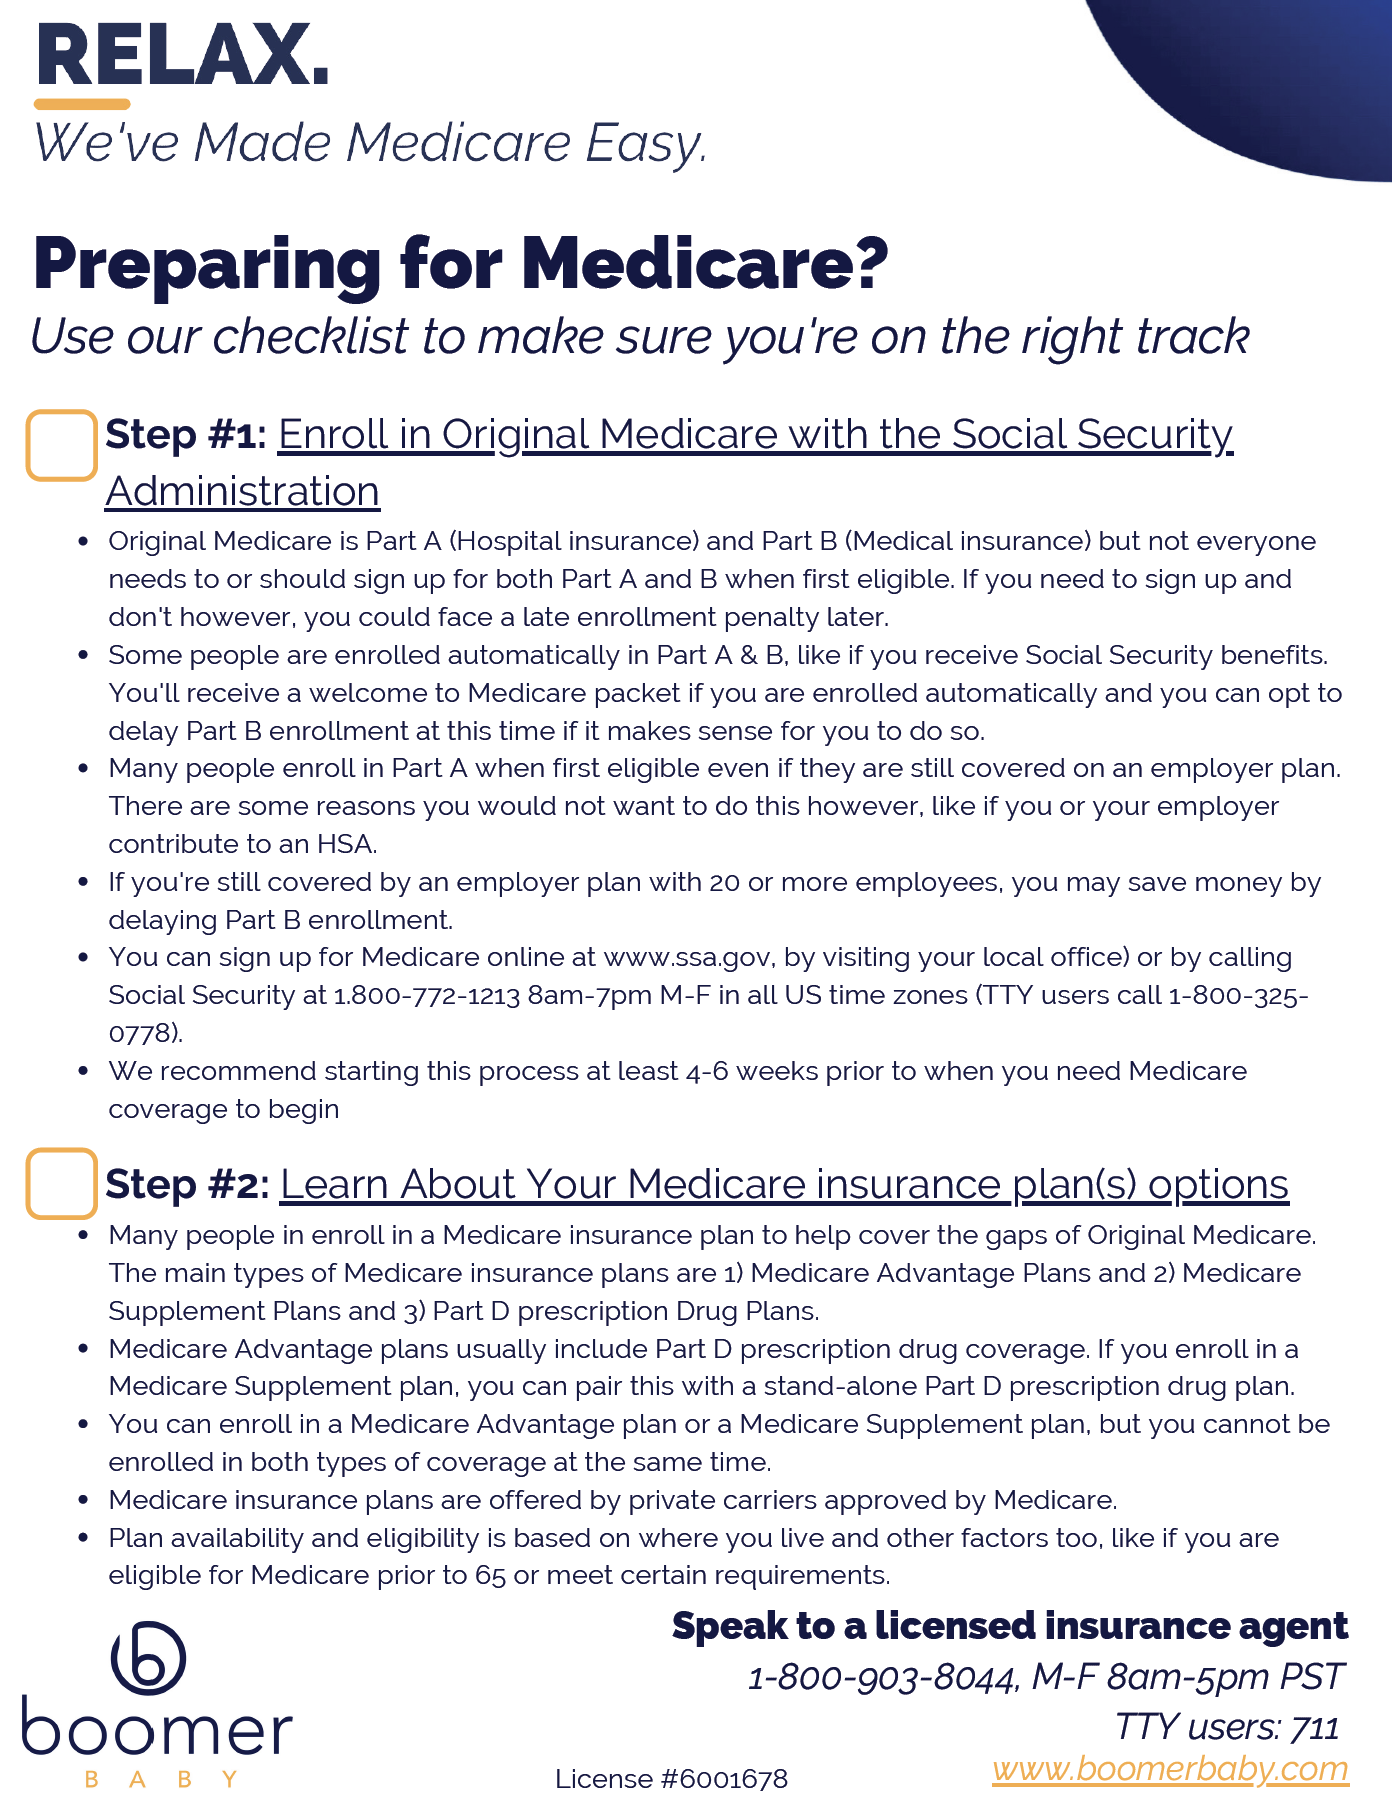 Prepare for Medicare 1